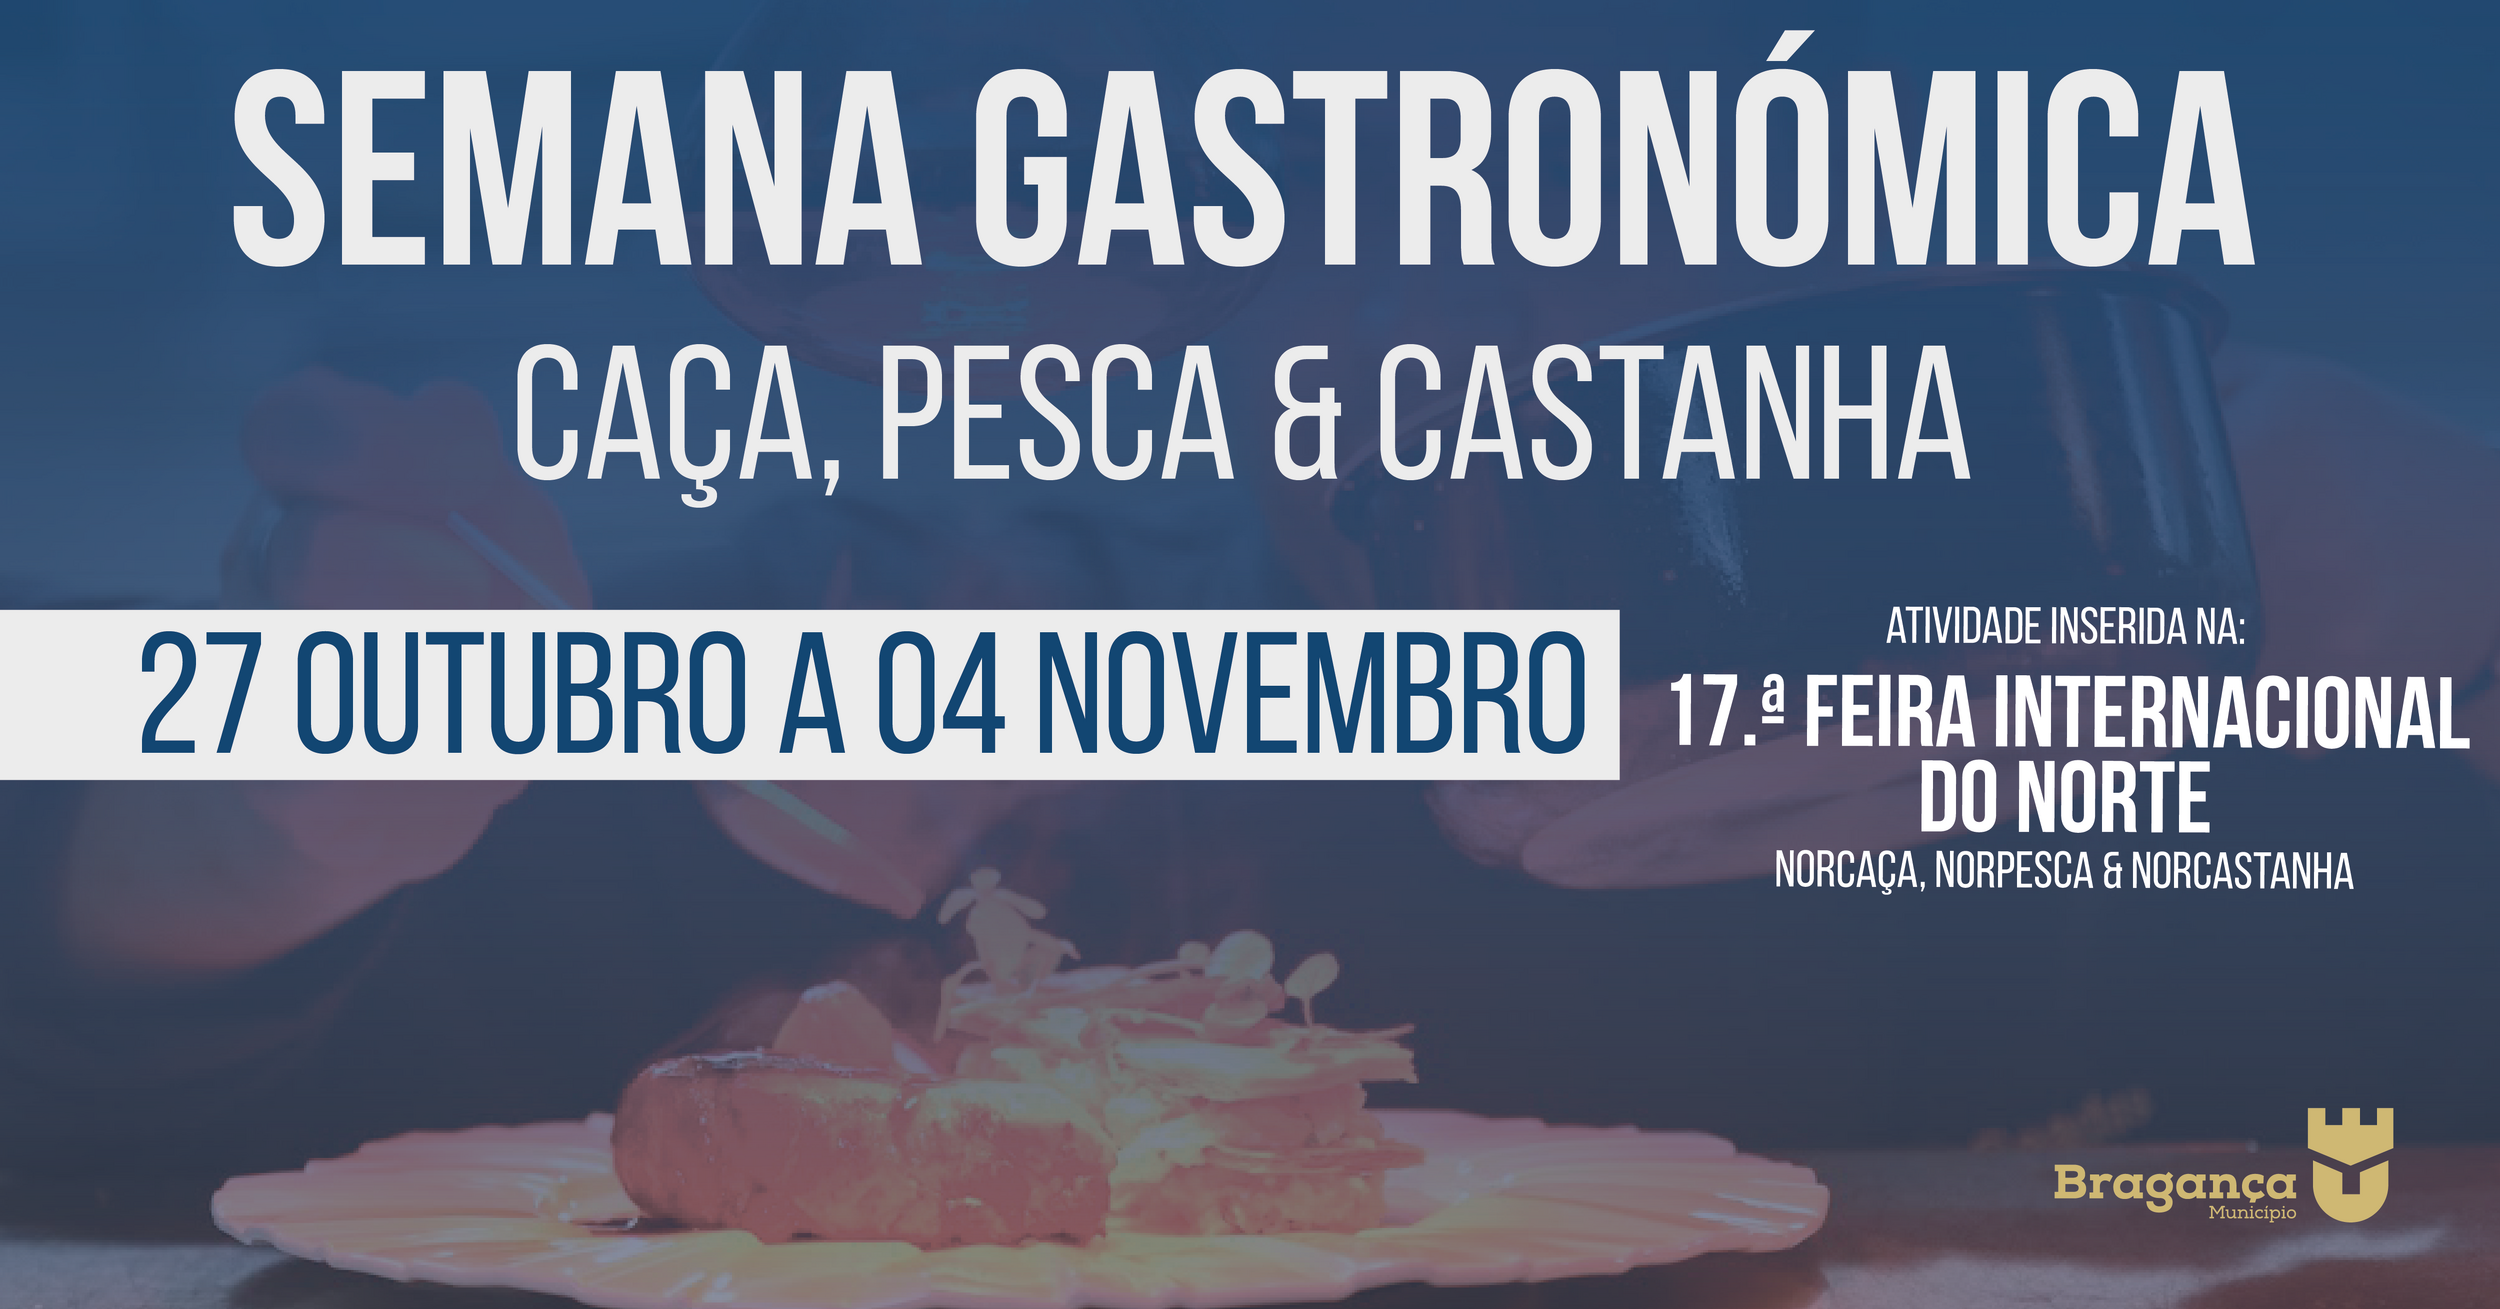 Semana Gastronómica - Caça, Pesca & Castanha